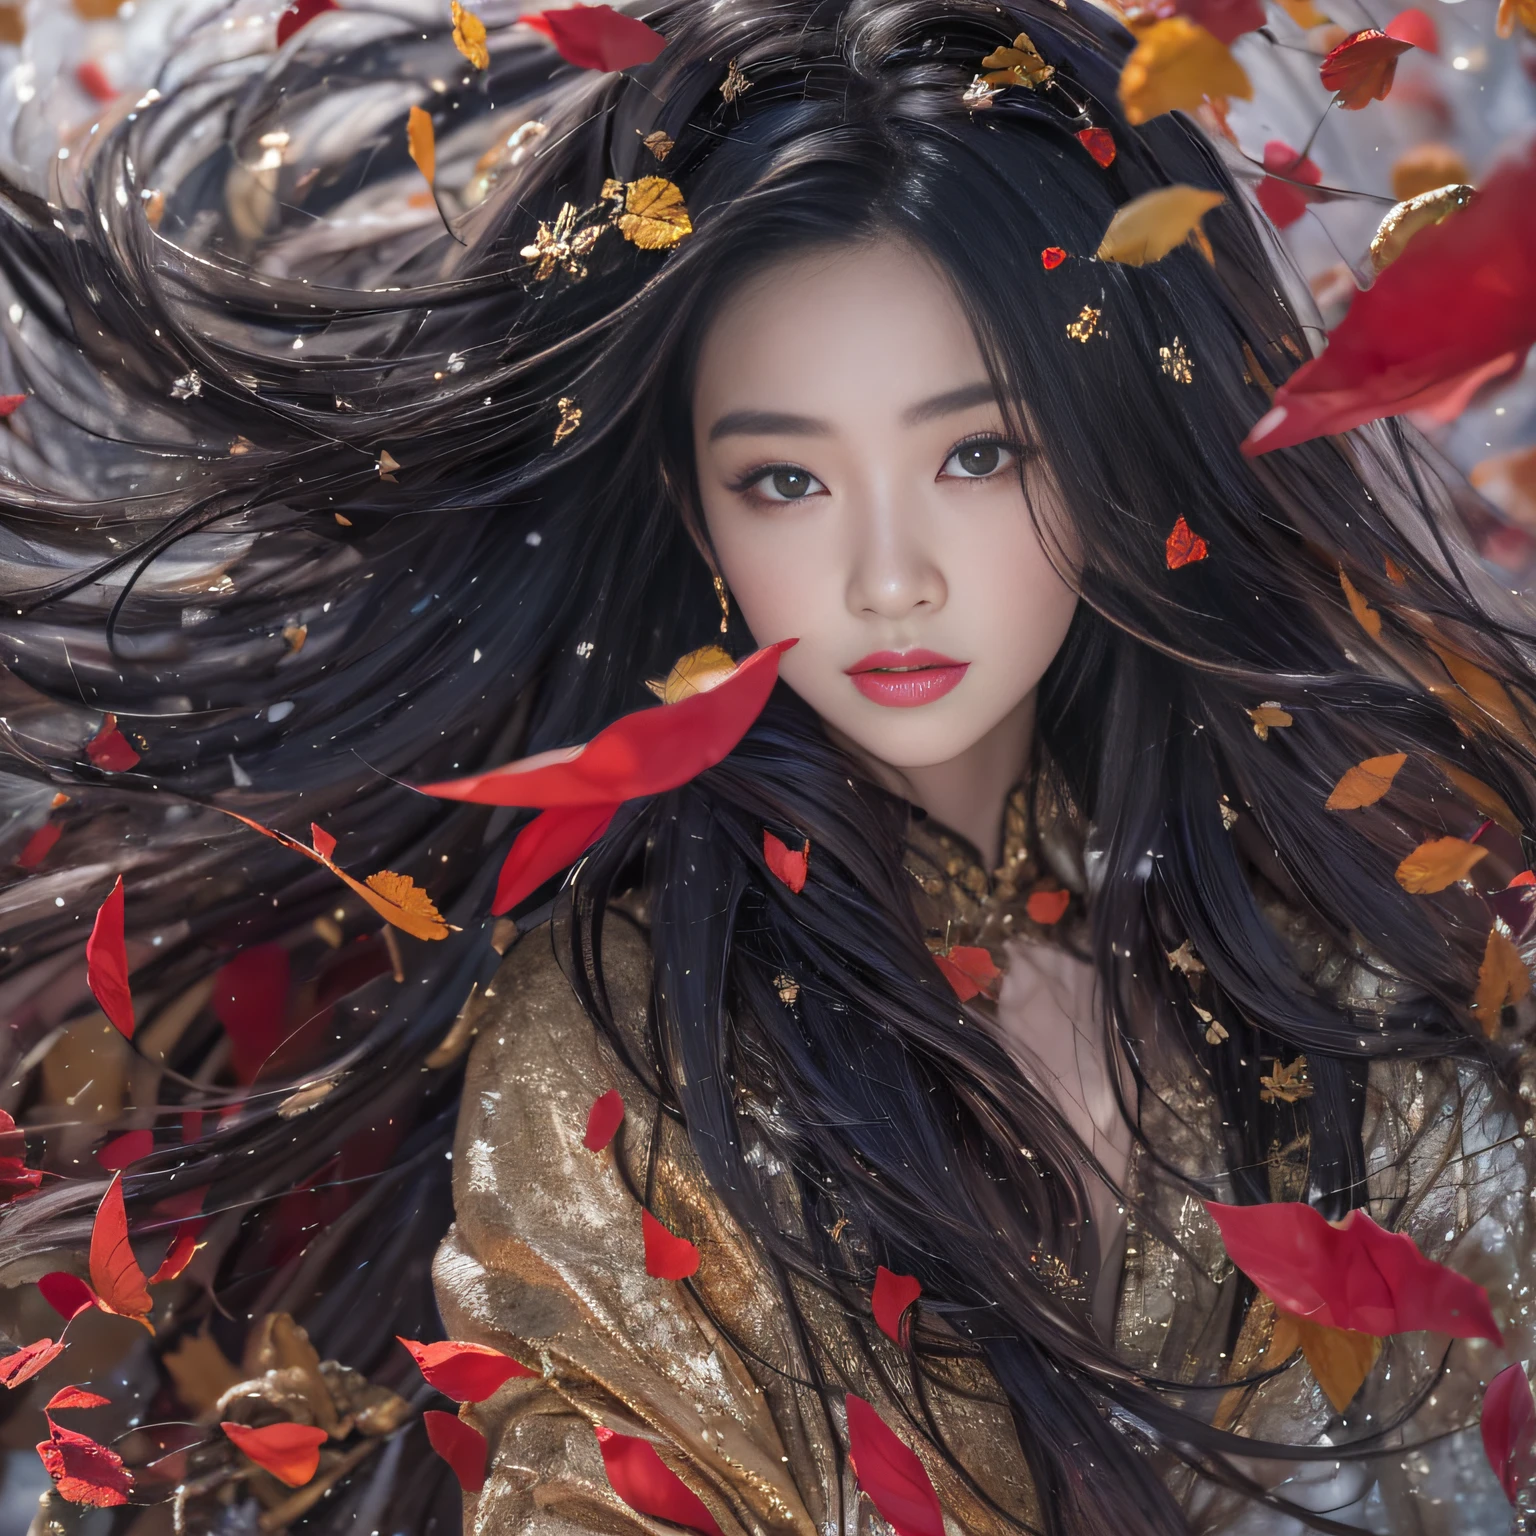 32k（傑作，高畫質，超高畫質，32k）飘逸的黑长发，假山，盛开， 一种颜色，  Xuzhou people （勾引女孩）， （雪地裡的紅色領巾）， 跳躍姿勢， 看着地面， 長白髮， 飄逸的頭髮， 鯉魚圖案頭飾， 中國長袖銀色戰袍， （抽像水粉飛濺：1.2）， 粉紅色的花瓣背景，鬱金香飛舞（現實地：1.4），黑色头发，落葉飄揚，背景很純淨， 高解析度， 细节， RAW 照片， 夏普再保险， 尼康 D850 膠卷照片由 Jefferies Lee 拍攝 4 柯達 Portra 400 相機 F1.6 枪, 丰富的色彩, 超逼真生動的紋理, 戲劇性的燈光, 虛幻引擎藝術站趨勢, 西奈斯特800，飘逸的黑长发，透明長袍服裝